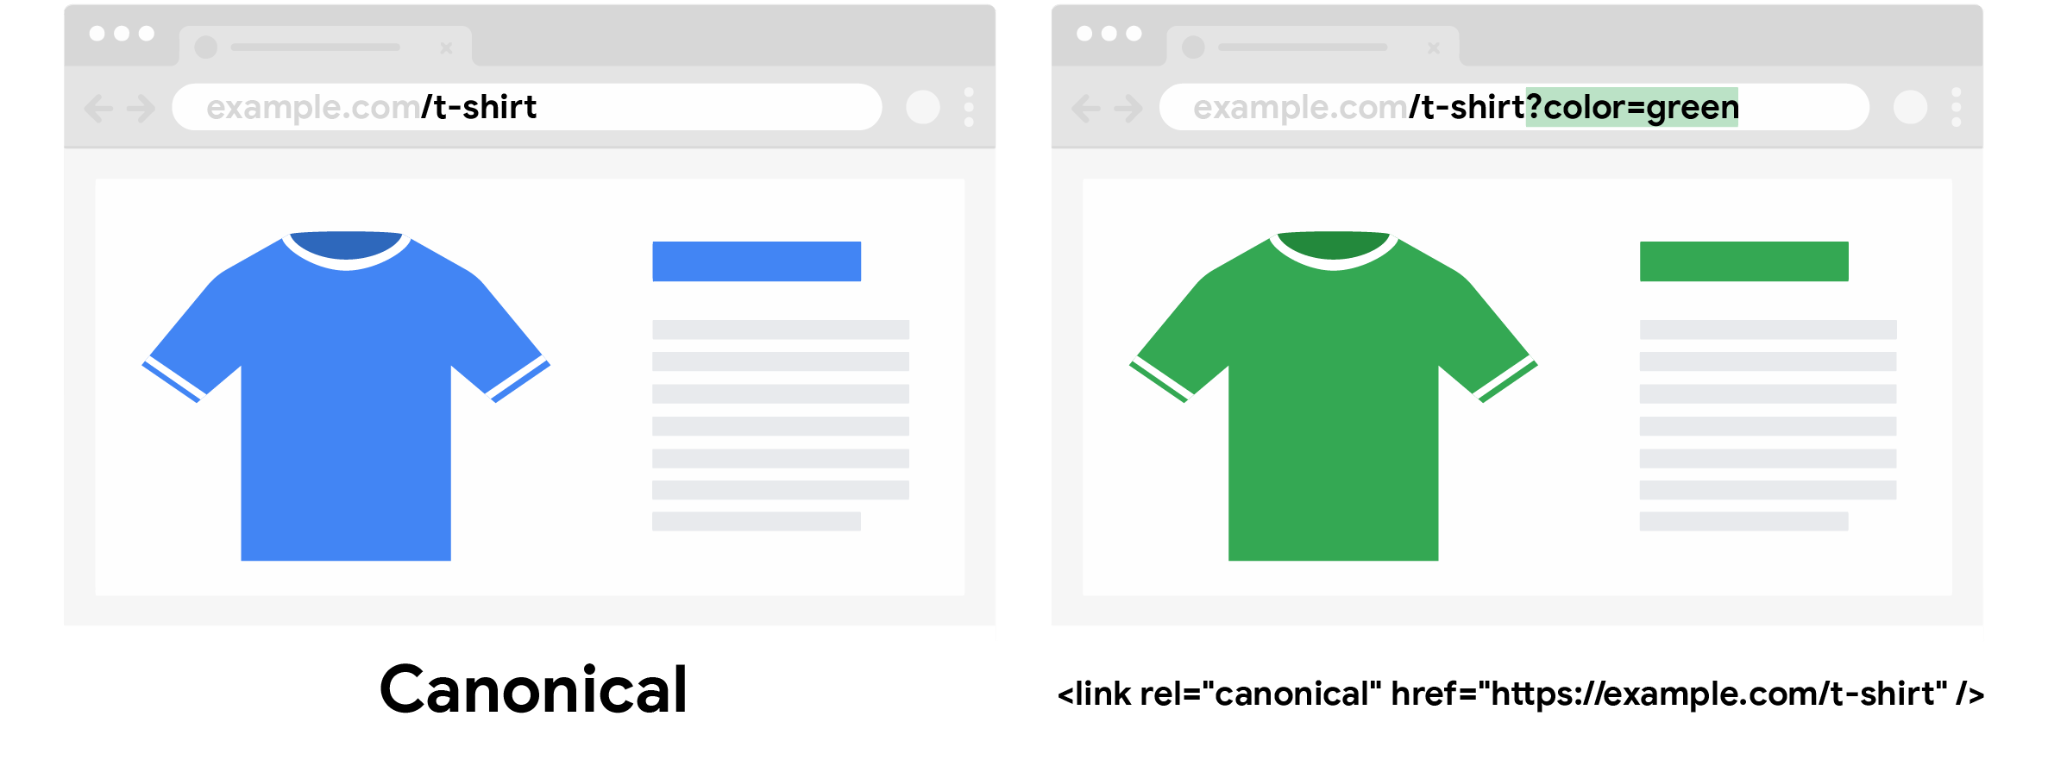 Una camiseta de color azul canónico sin el parámetro de consulta correspondiente al color y una camiseta de color verde no canónico con el parámetro de consulta de color especificado